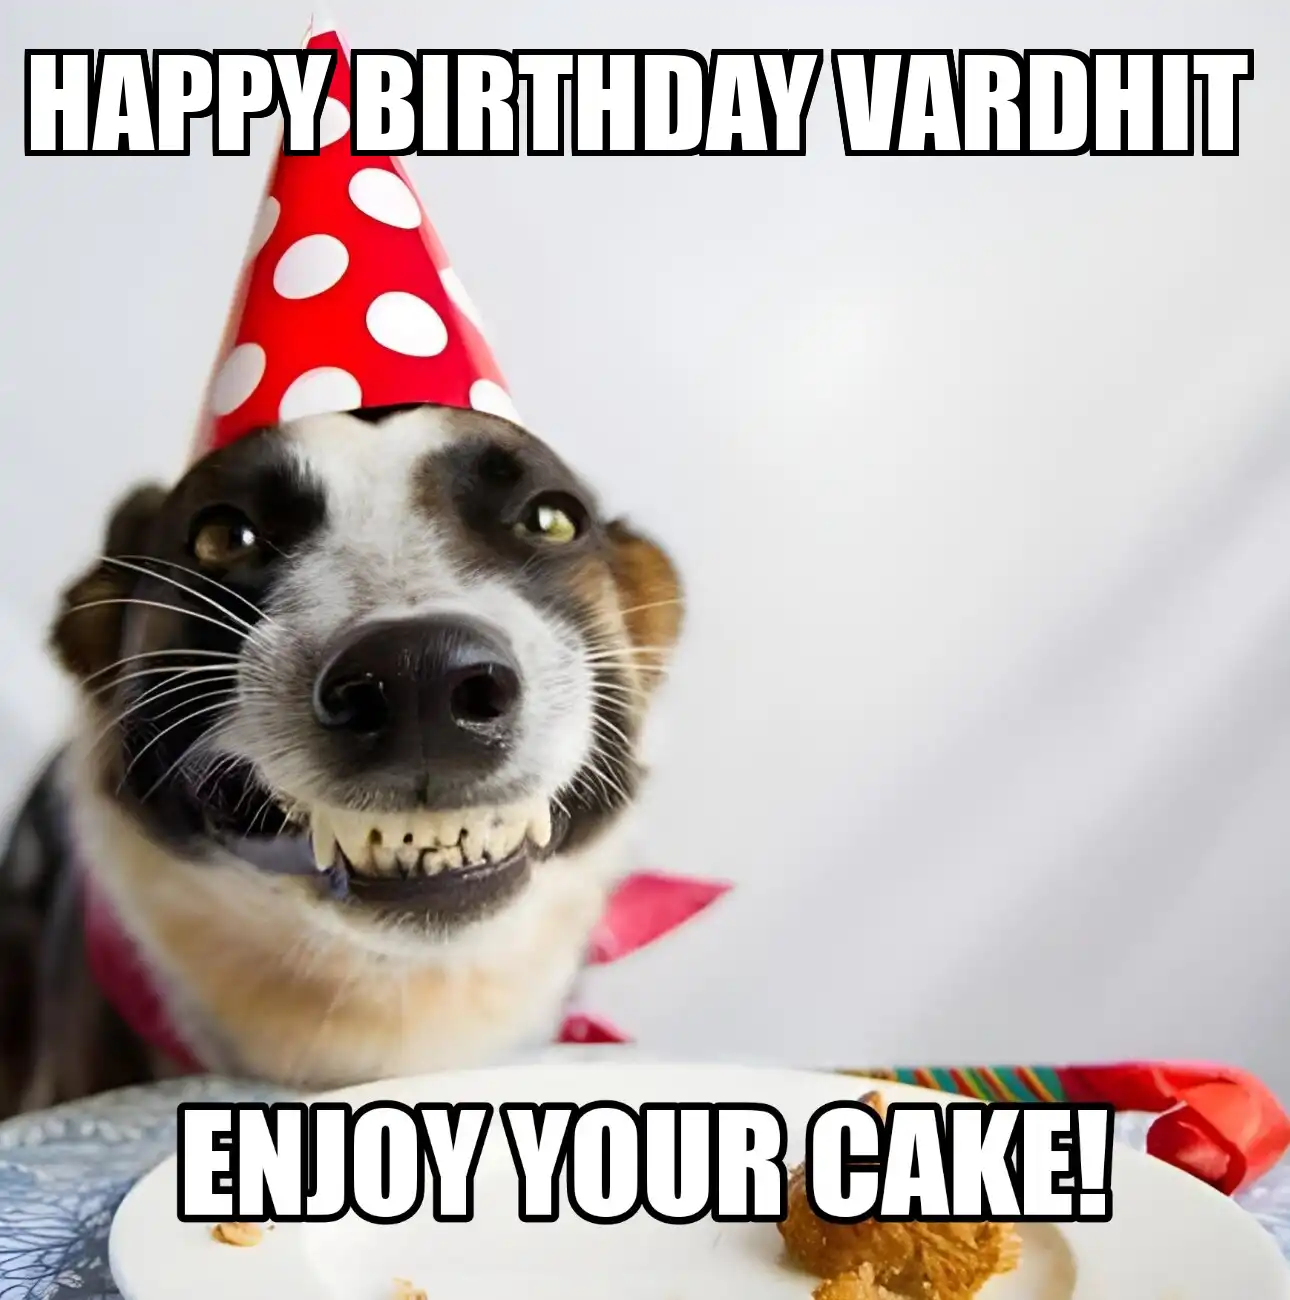 Happy Birthday Vardhit Enjoy Your Cake Dog Meme